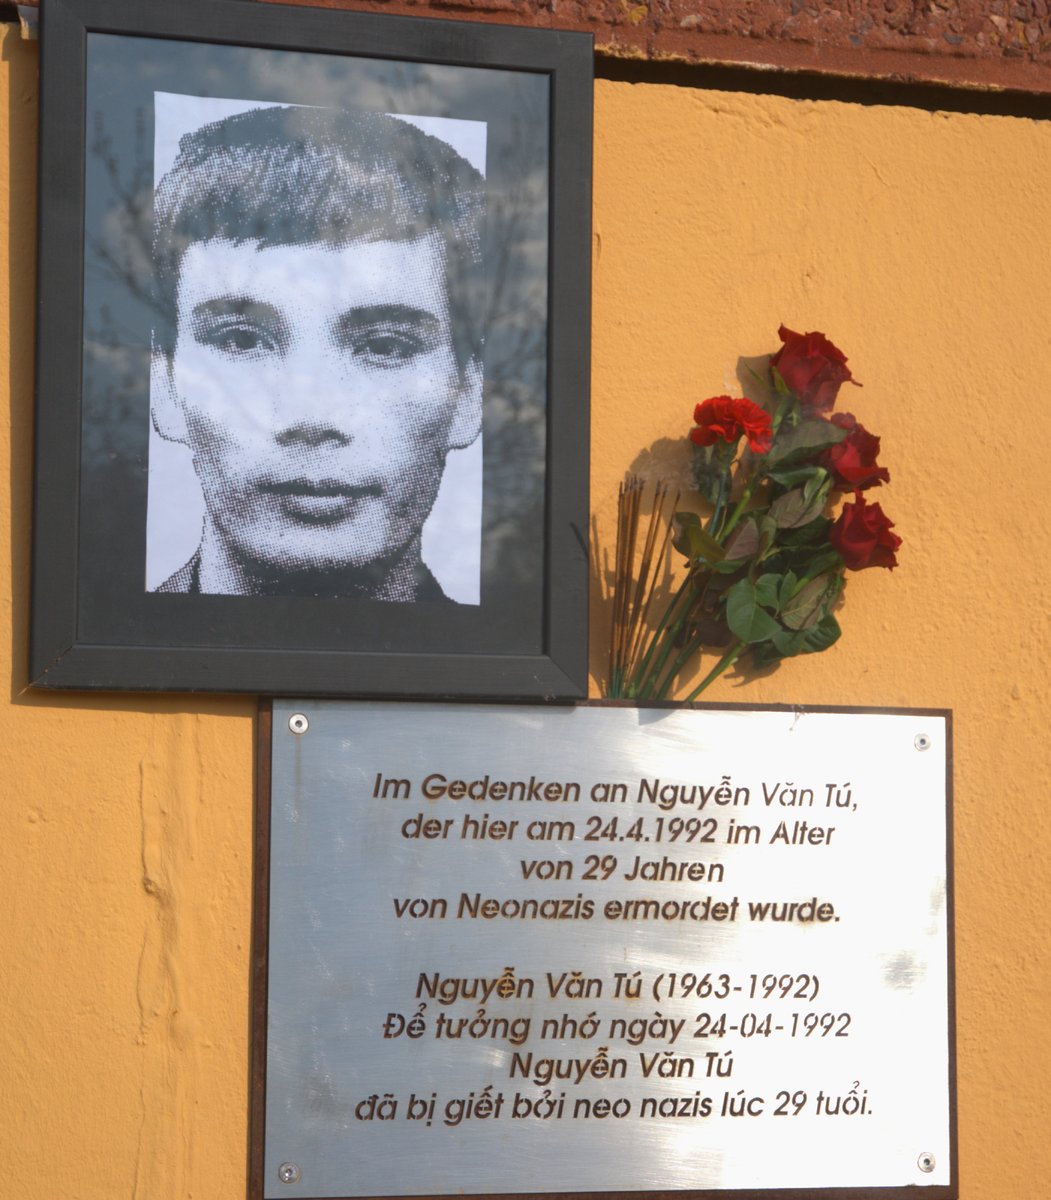 Heute #Gedenken wir #NguyễnVănTú, der vor 31. Jahren in #Berlin-#Marzahn von einem #Faschisten erstochen wurde.

Zum Todestag gab es ein stilles Gedenken.

#NiemandistVergessen #KeinVergeben #KeinVergessen #SayTheirNames #RassismusTötet 

berlin.niemandistvergessen.net/1224/nguyen-va…